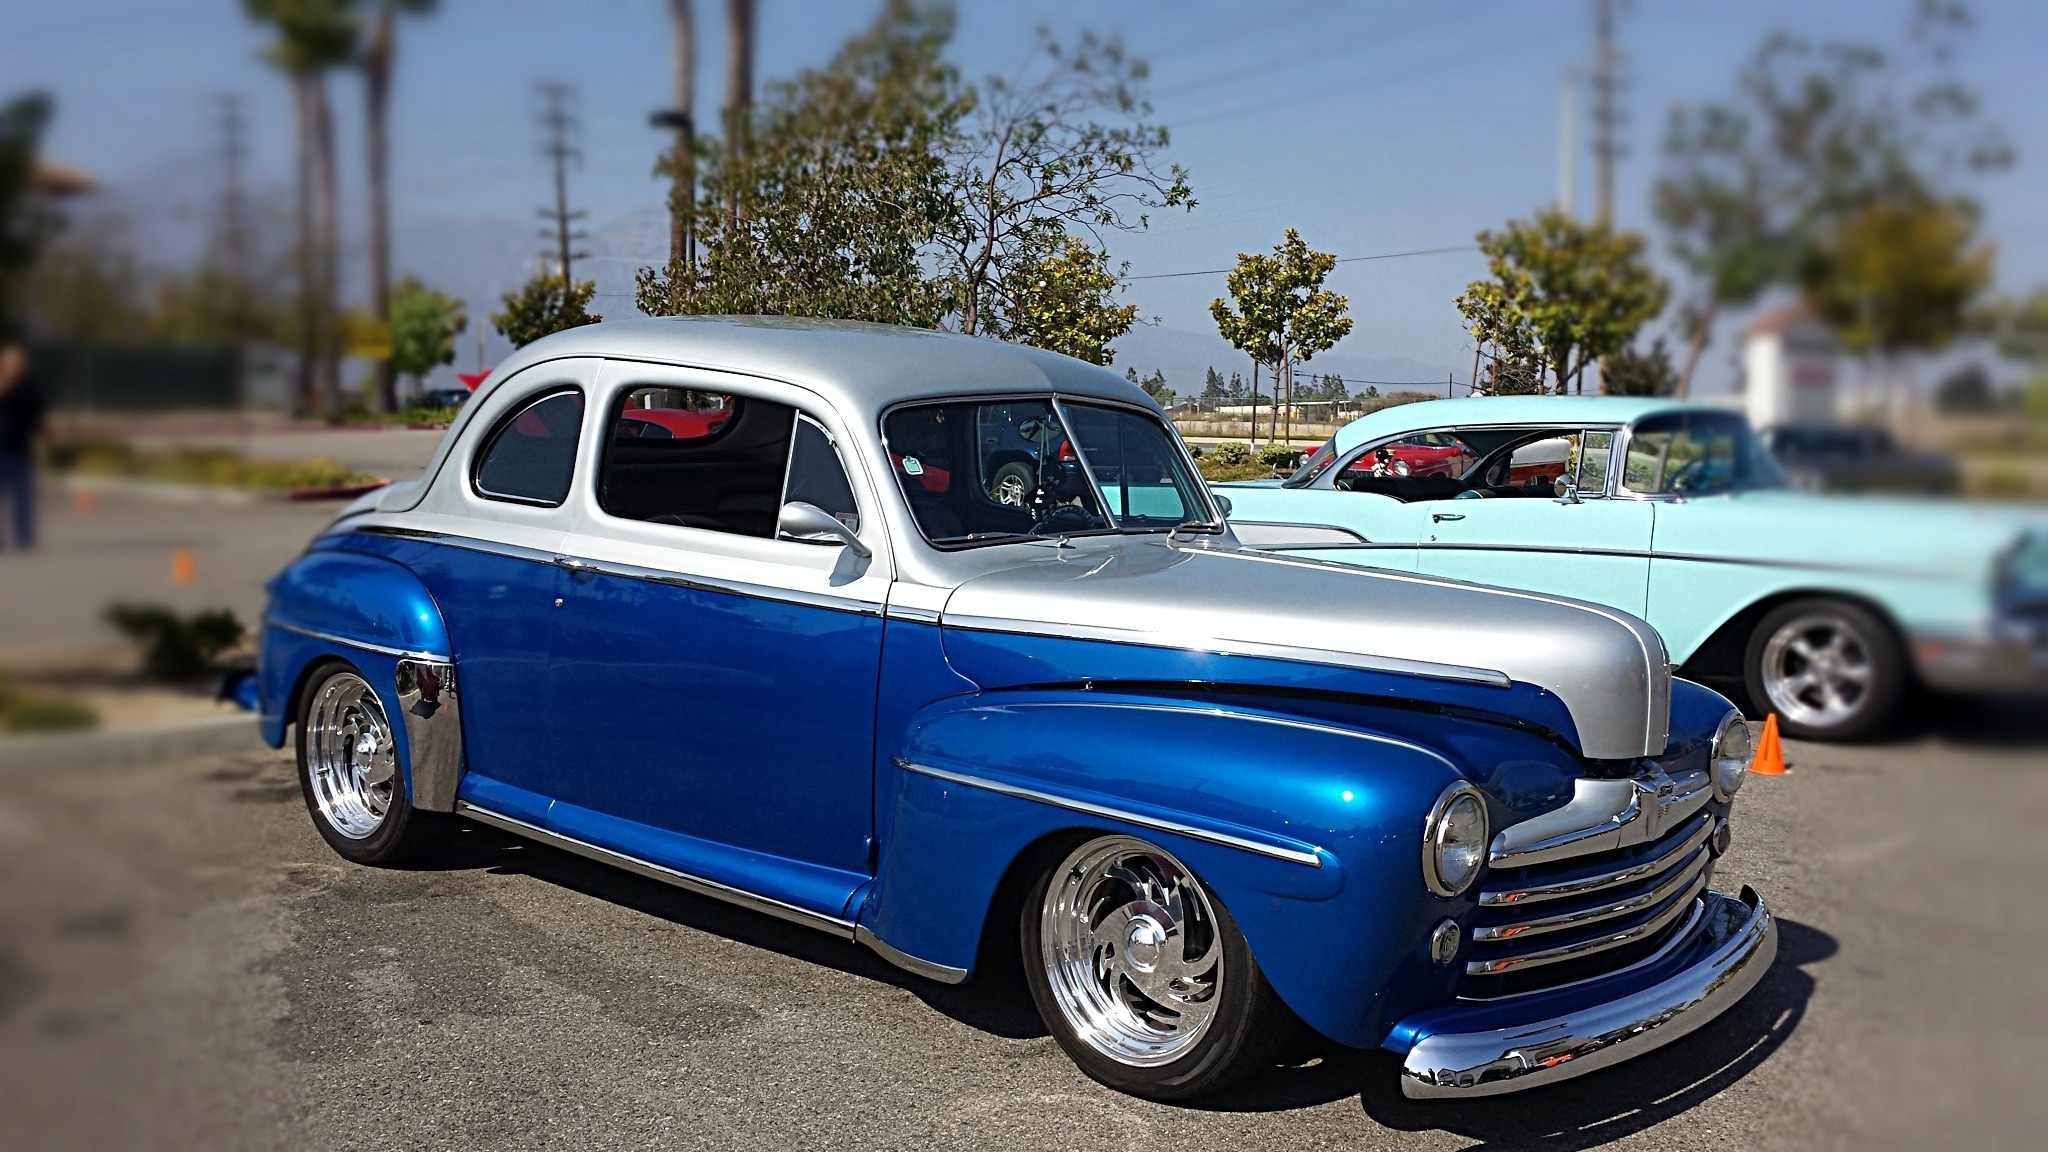 blue classic car